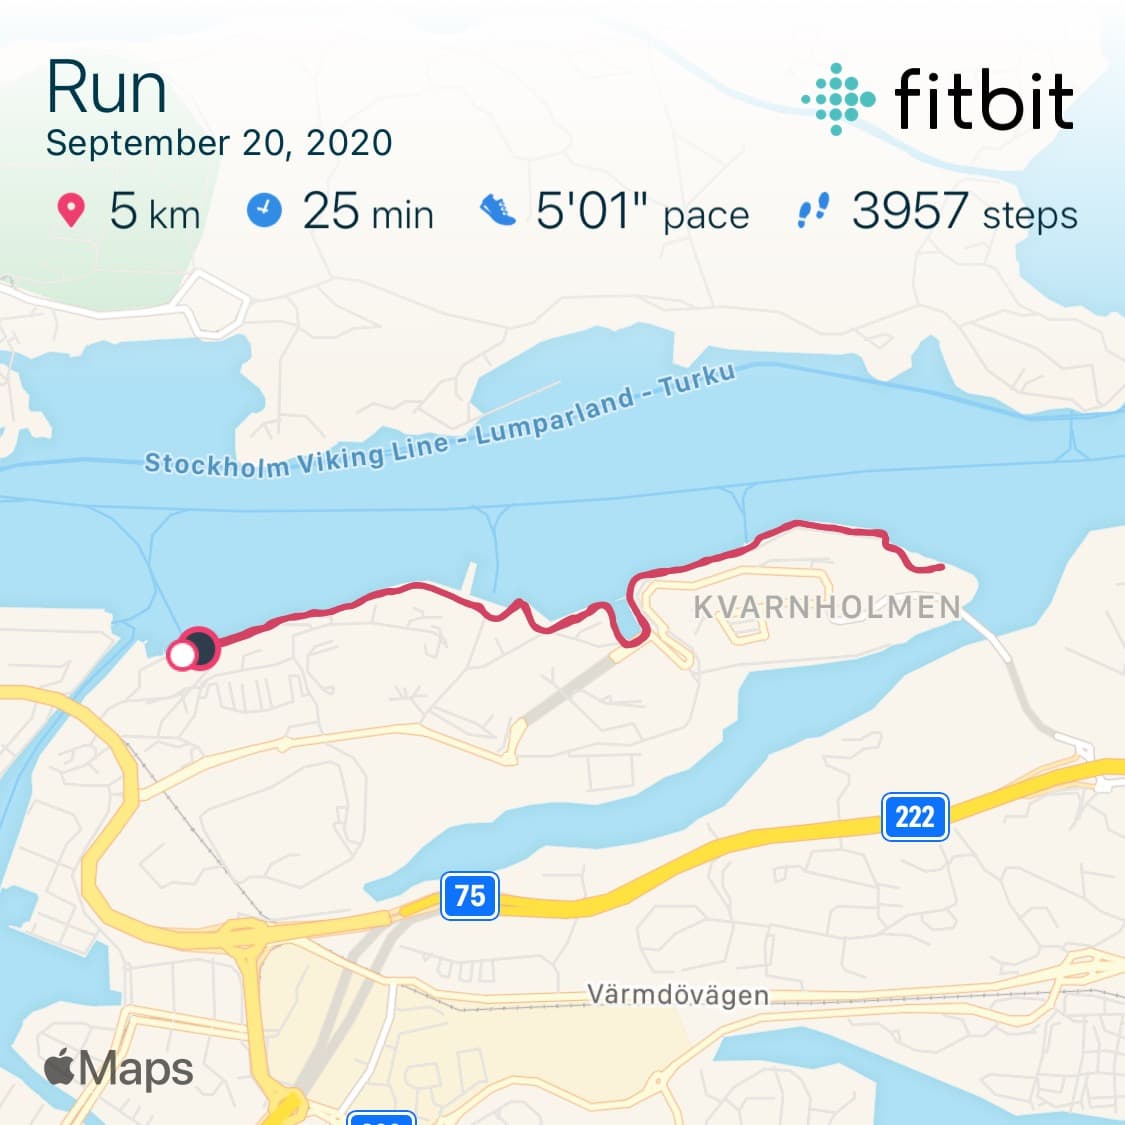 Screenshot of 5 km run in Fitbit